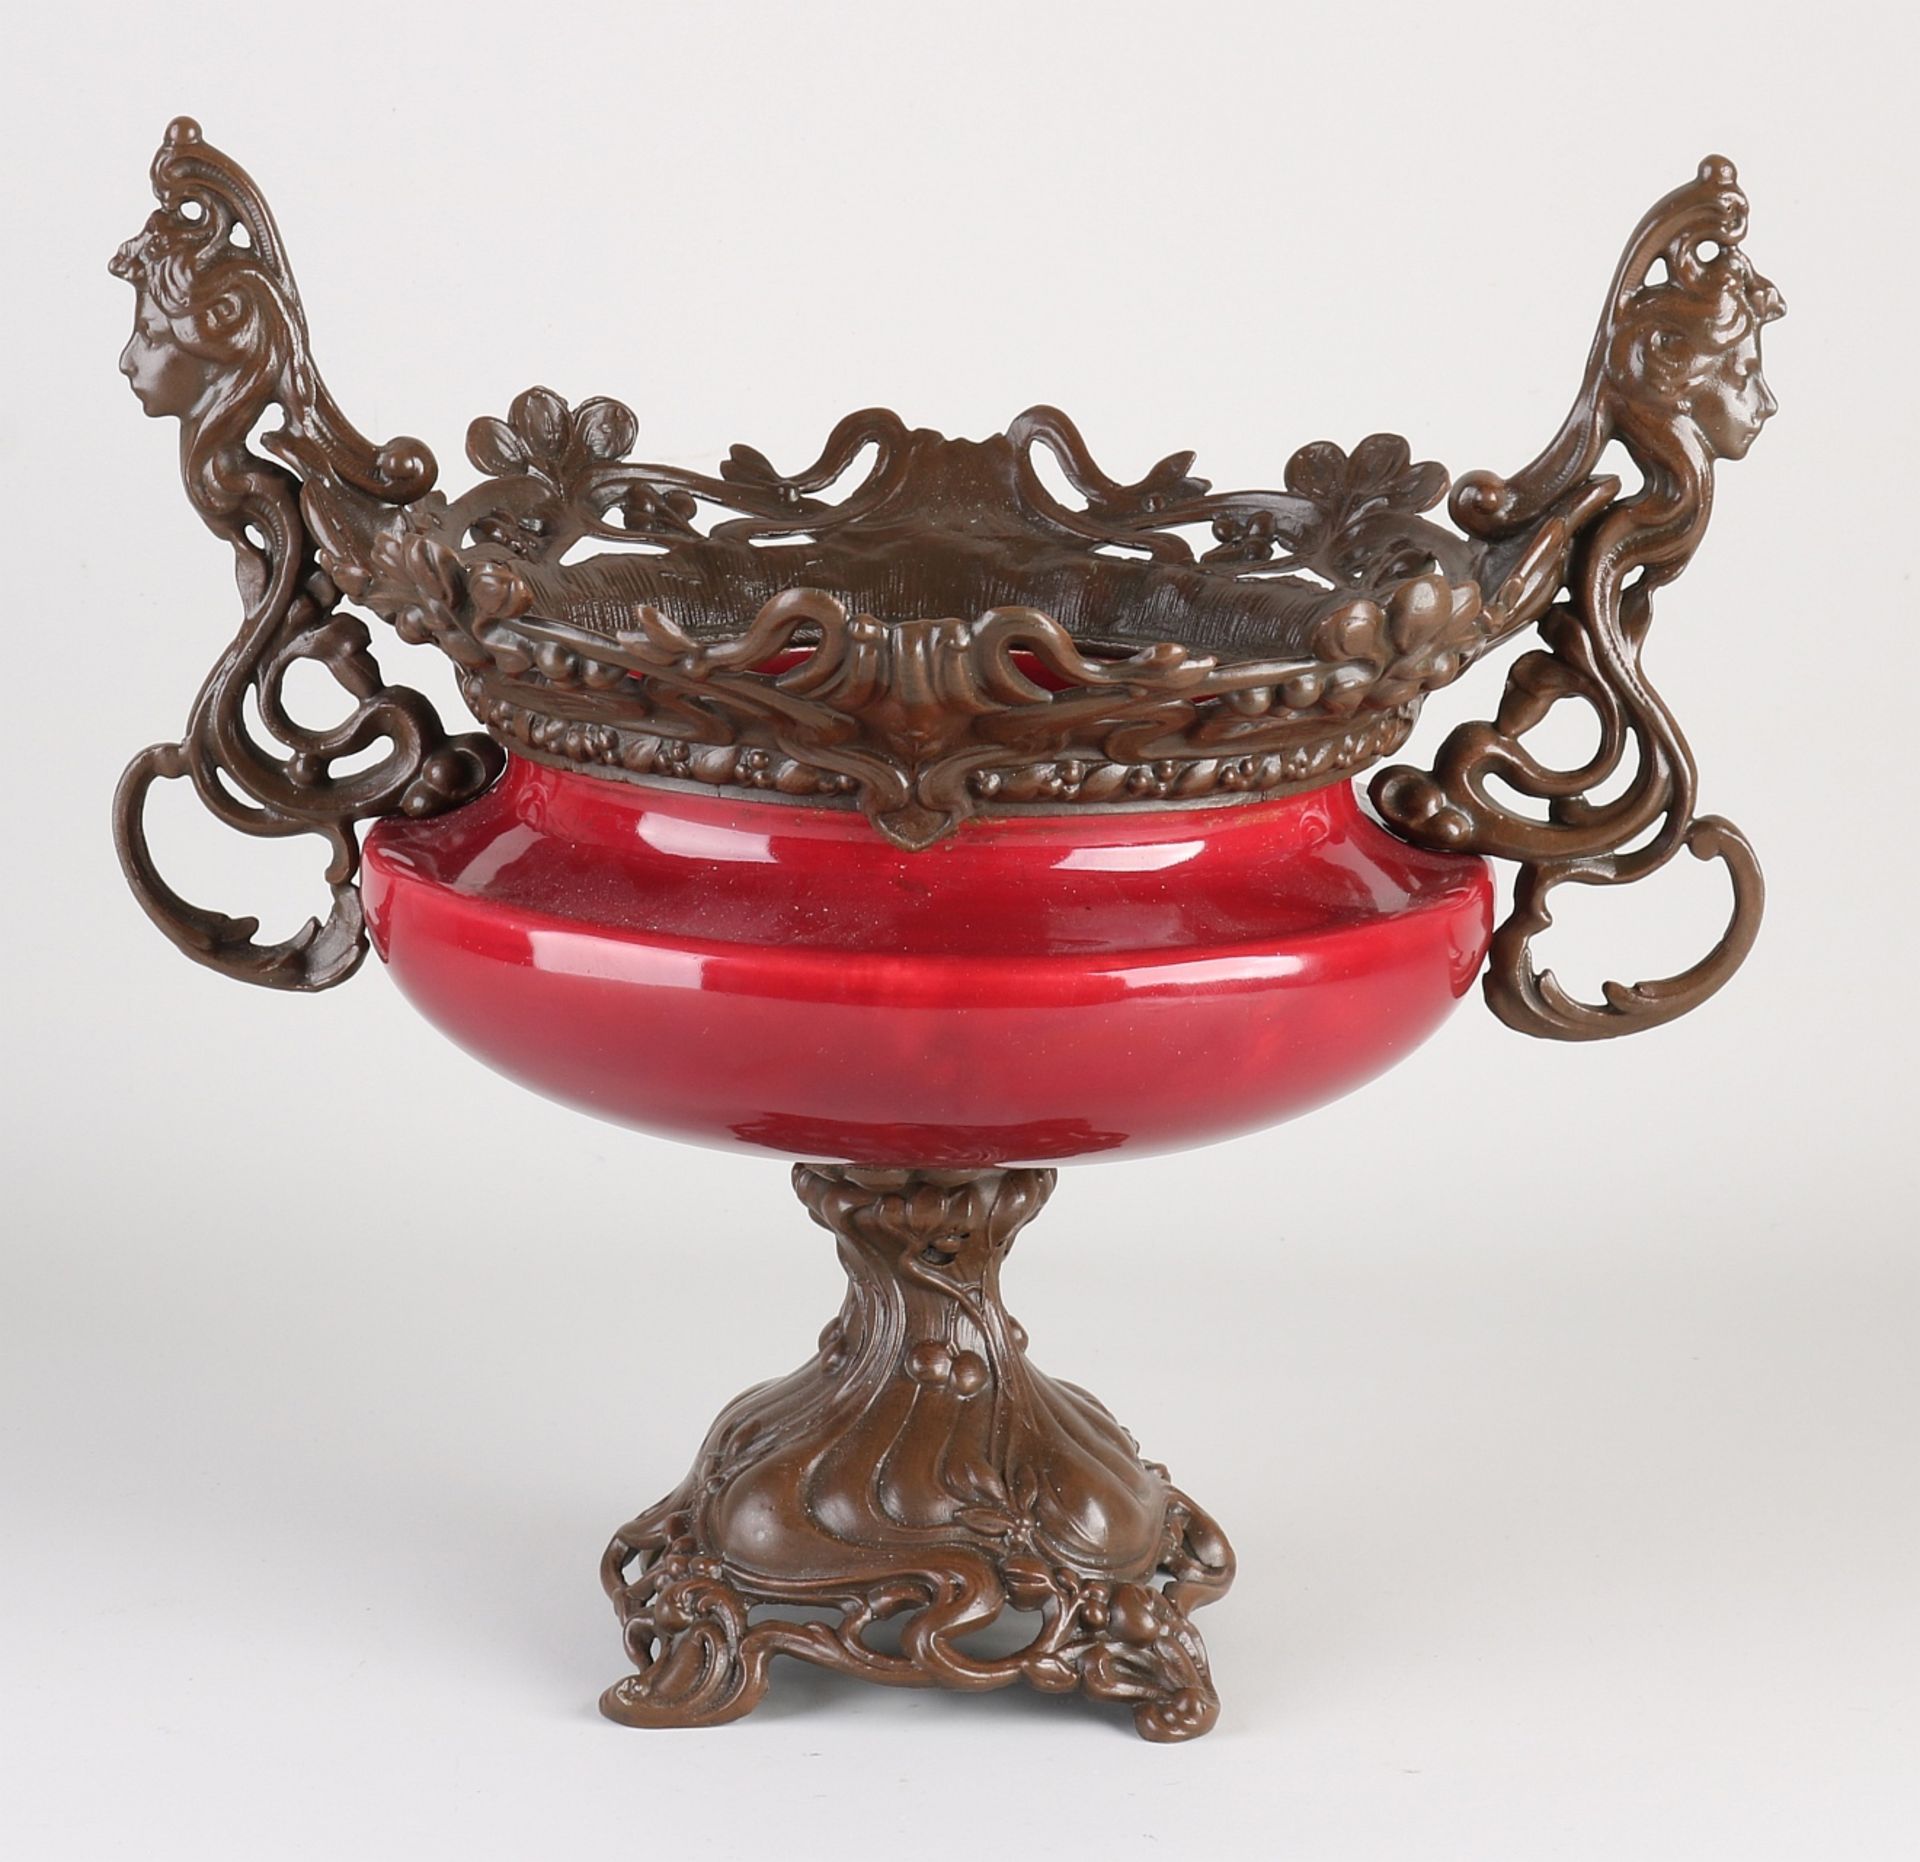 Antique Jugendstil table bowl, 1900 - Image 2 of 2